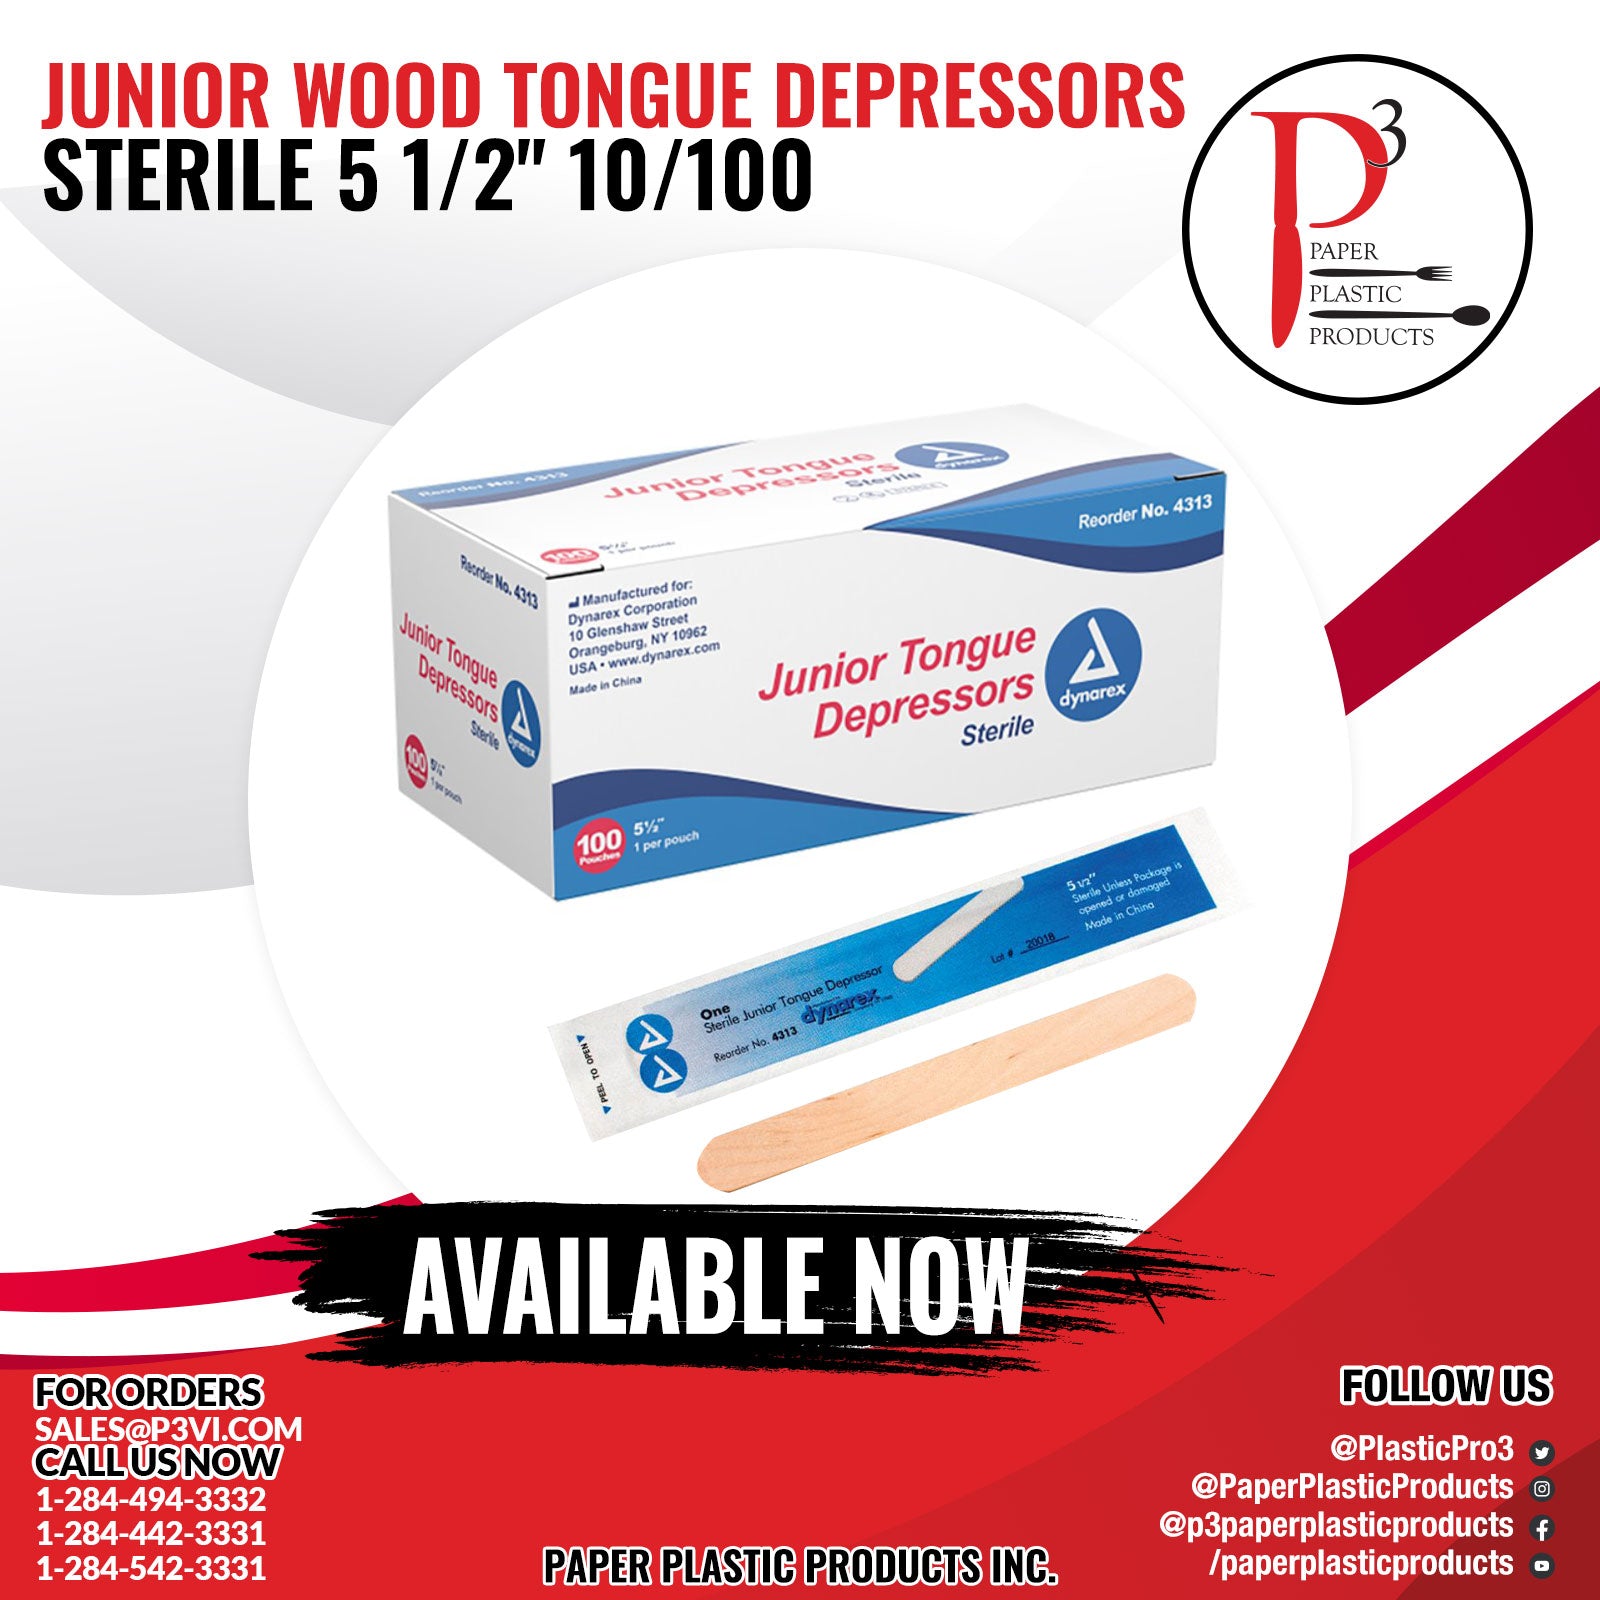 Junior Wood Tongue Depressors Sterile 5 1/2" 10/100